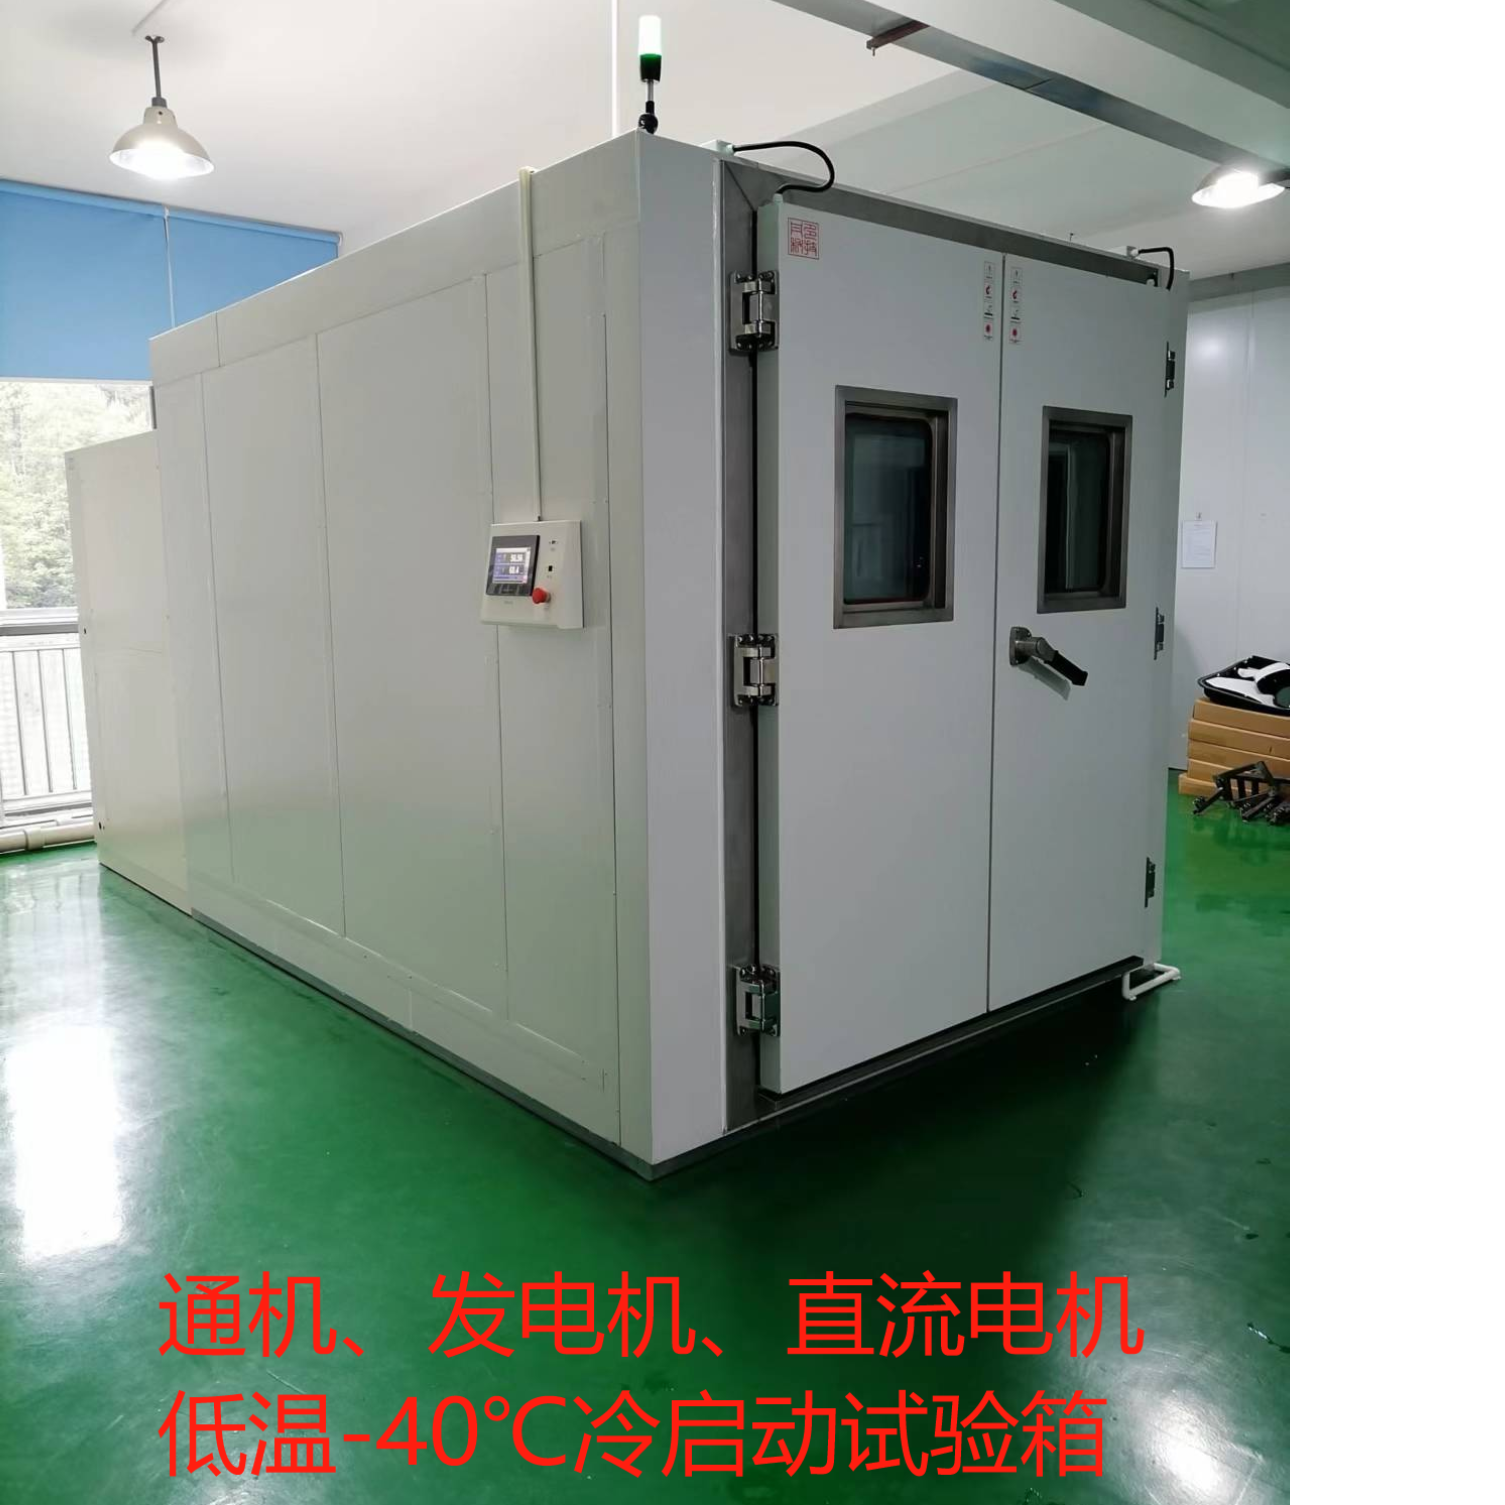 CO试验箱、通机排放测试PGMA-2023/UL2201、一氧化碳试验箱、发电机冷启动试验箱